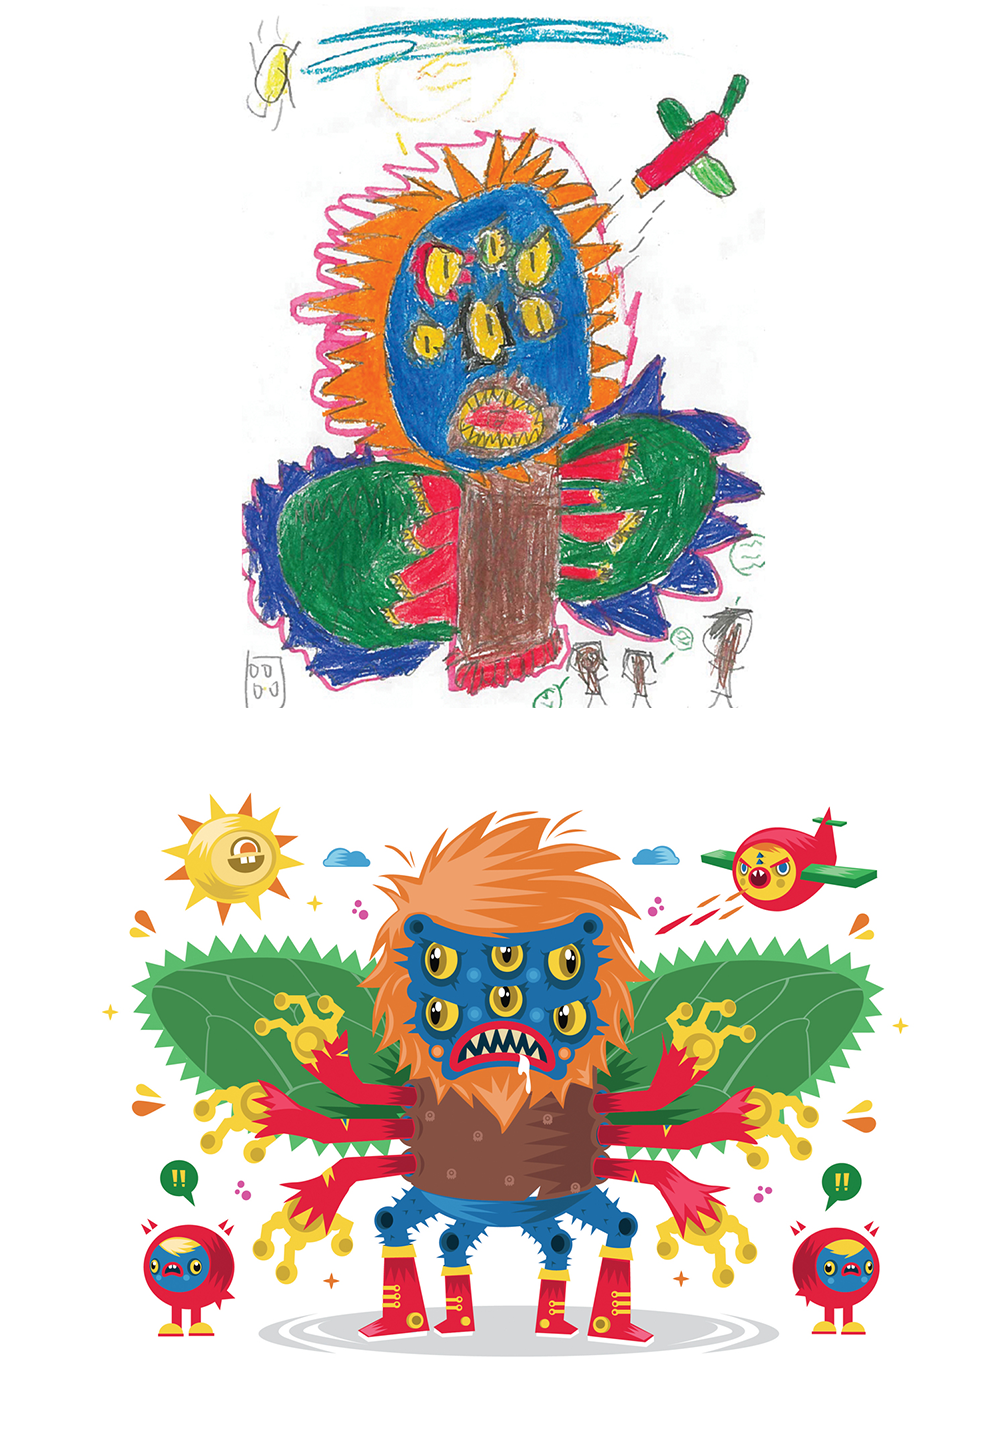 monsters kids children doodles crayons Elementary School grade school the monster project texas James Victore